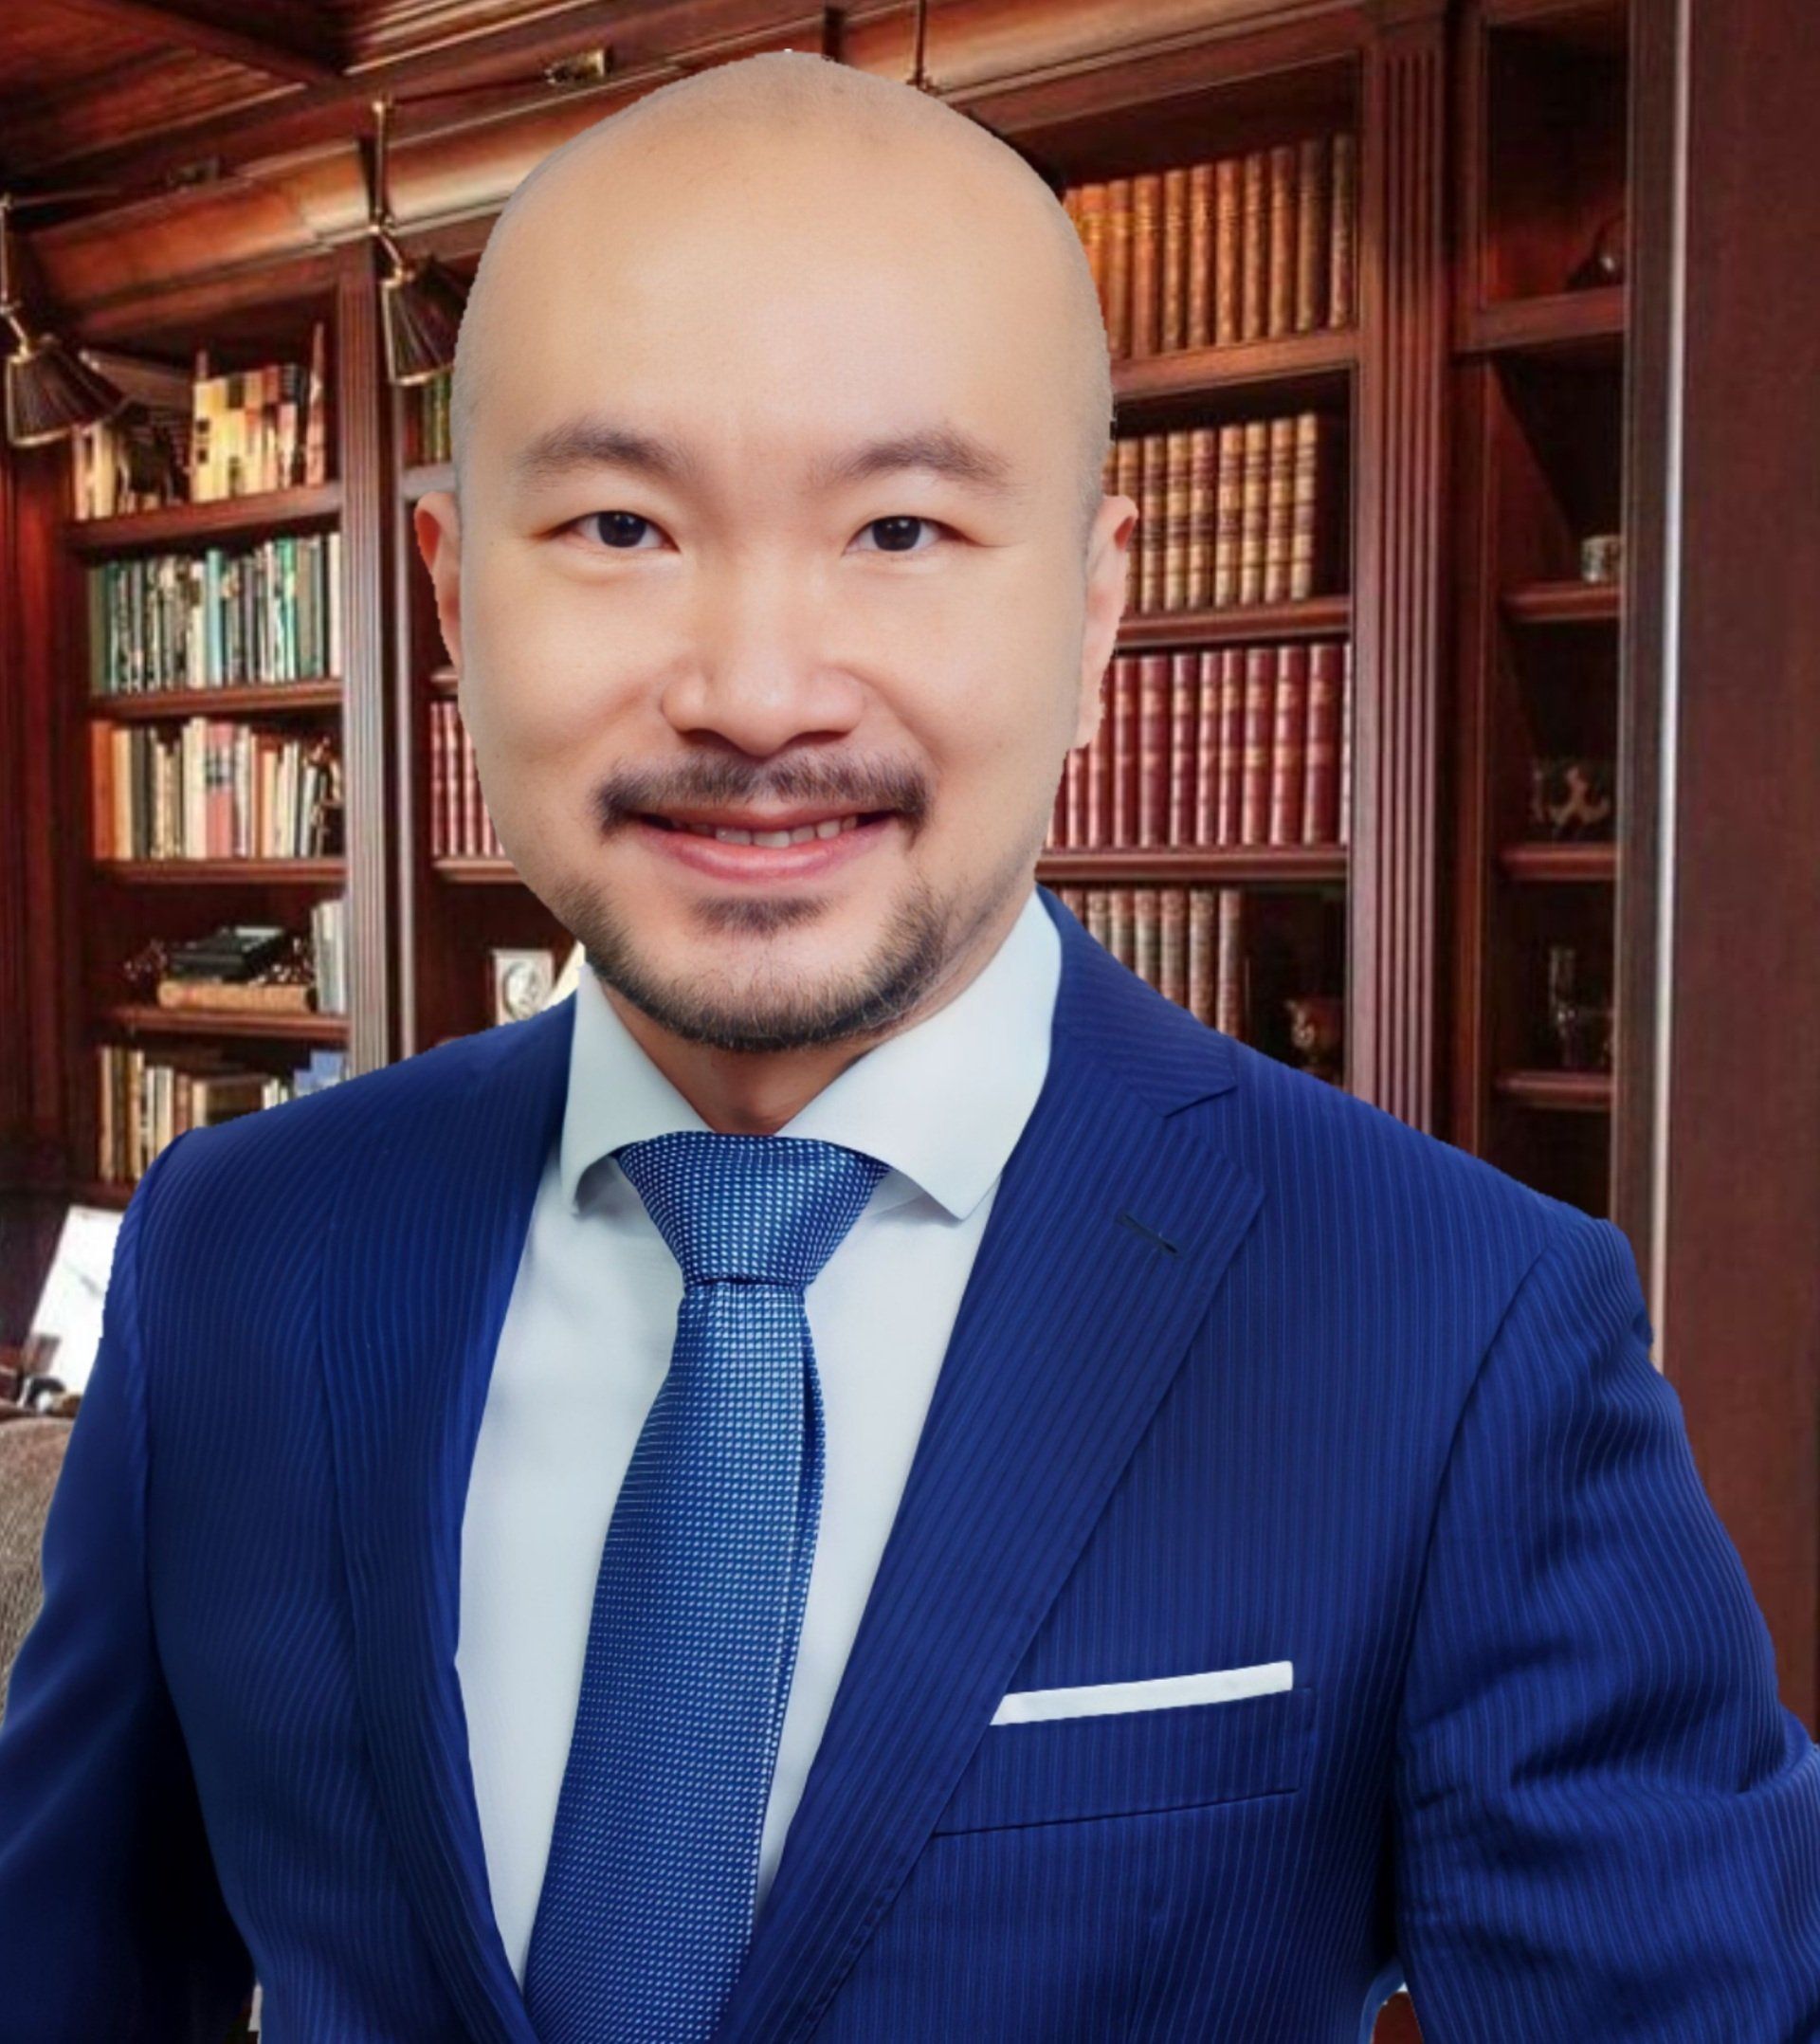 一個穿著藍色西裝打領帶的黃鶴鳴律師 (Alan Wong)在書架前微笑